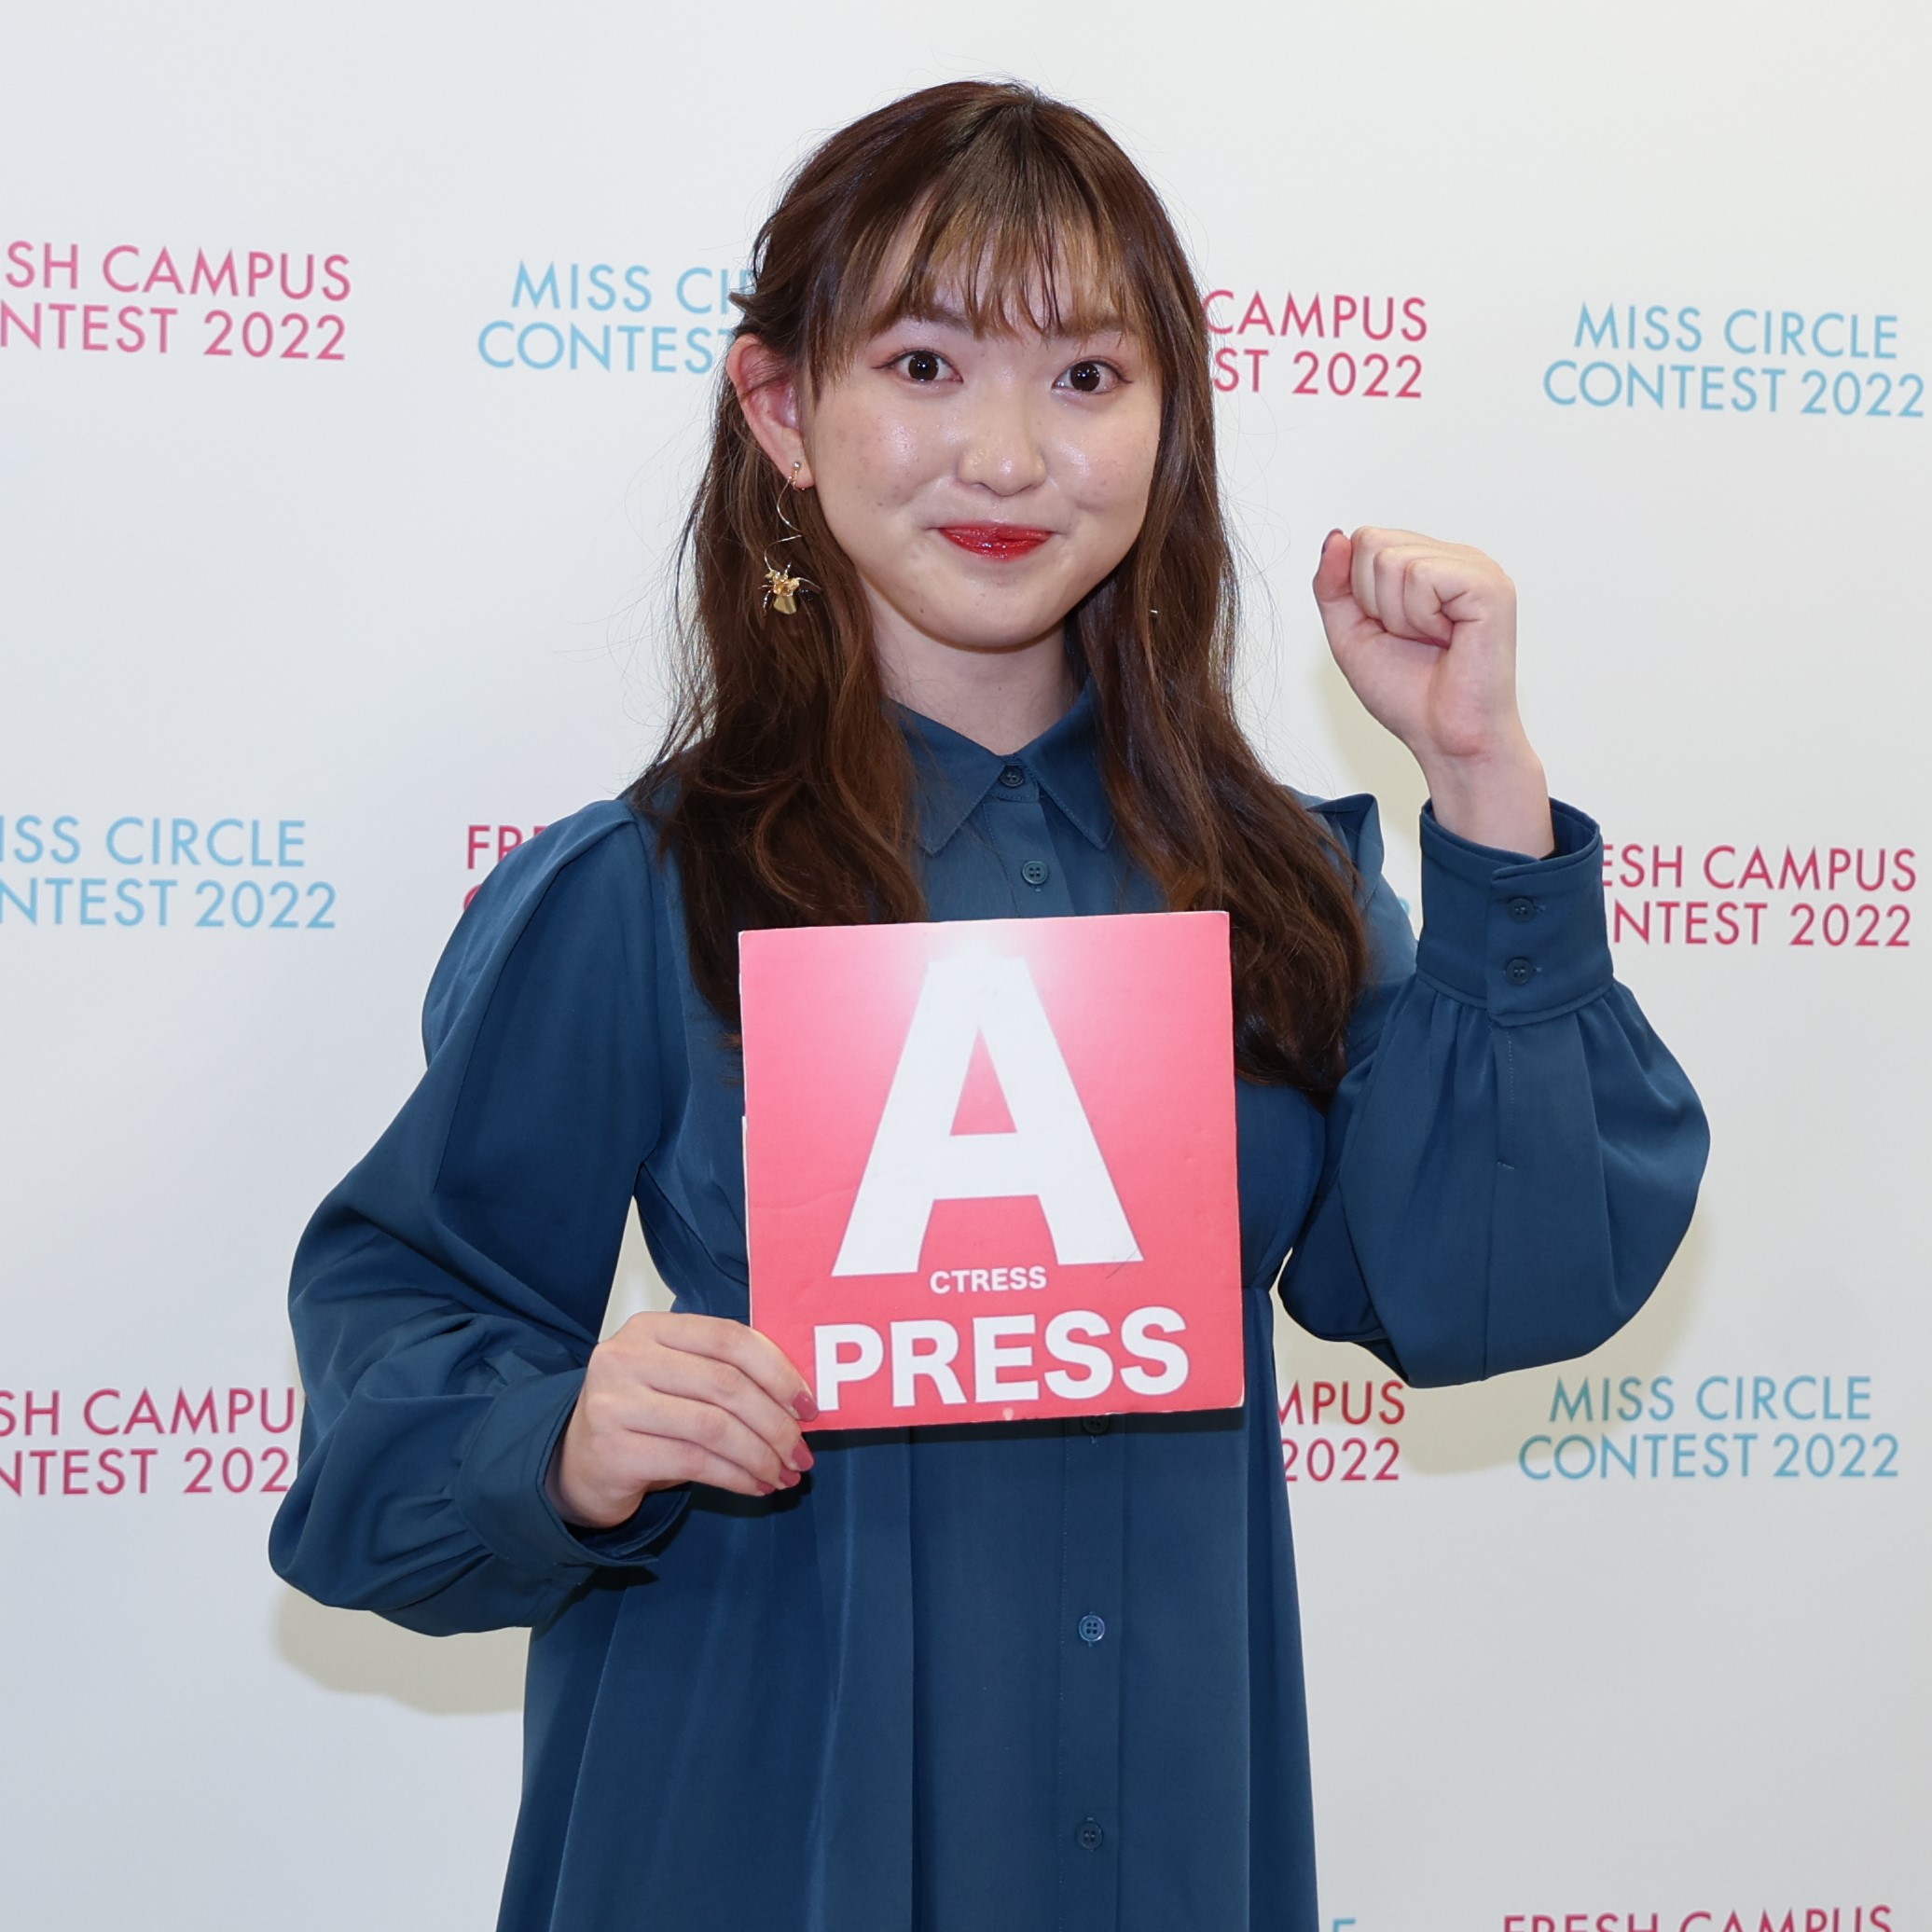 中嶋未来（なかじま みく.上智大学）フレキャン2022・ファイナリスト ACTRESS PRESS